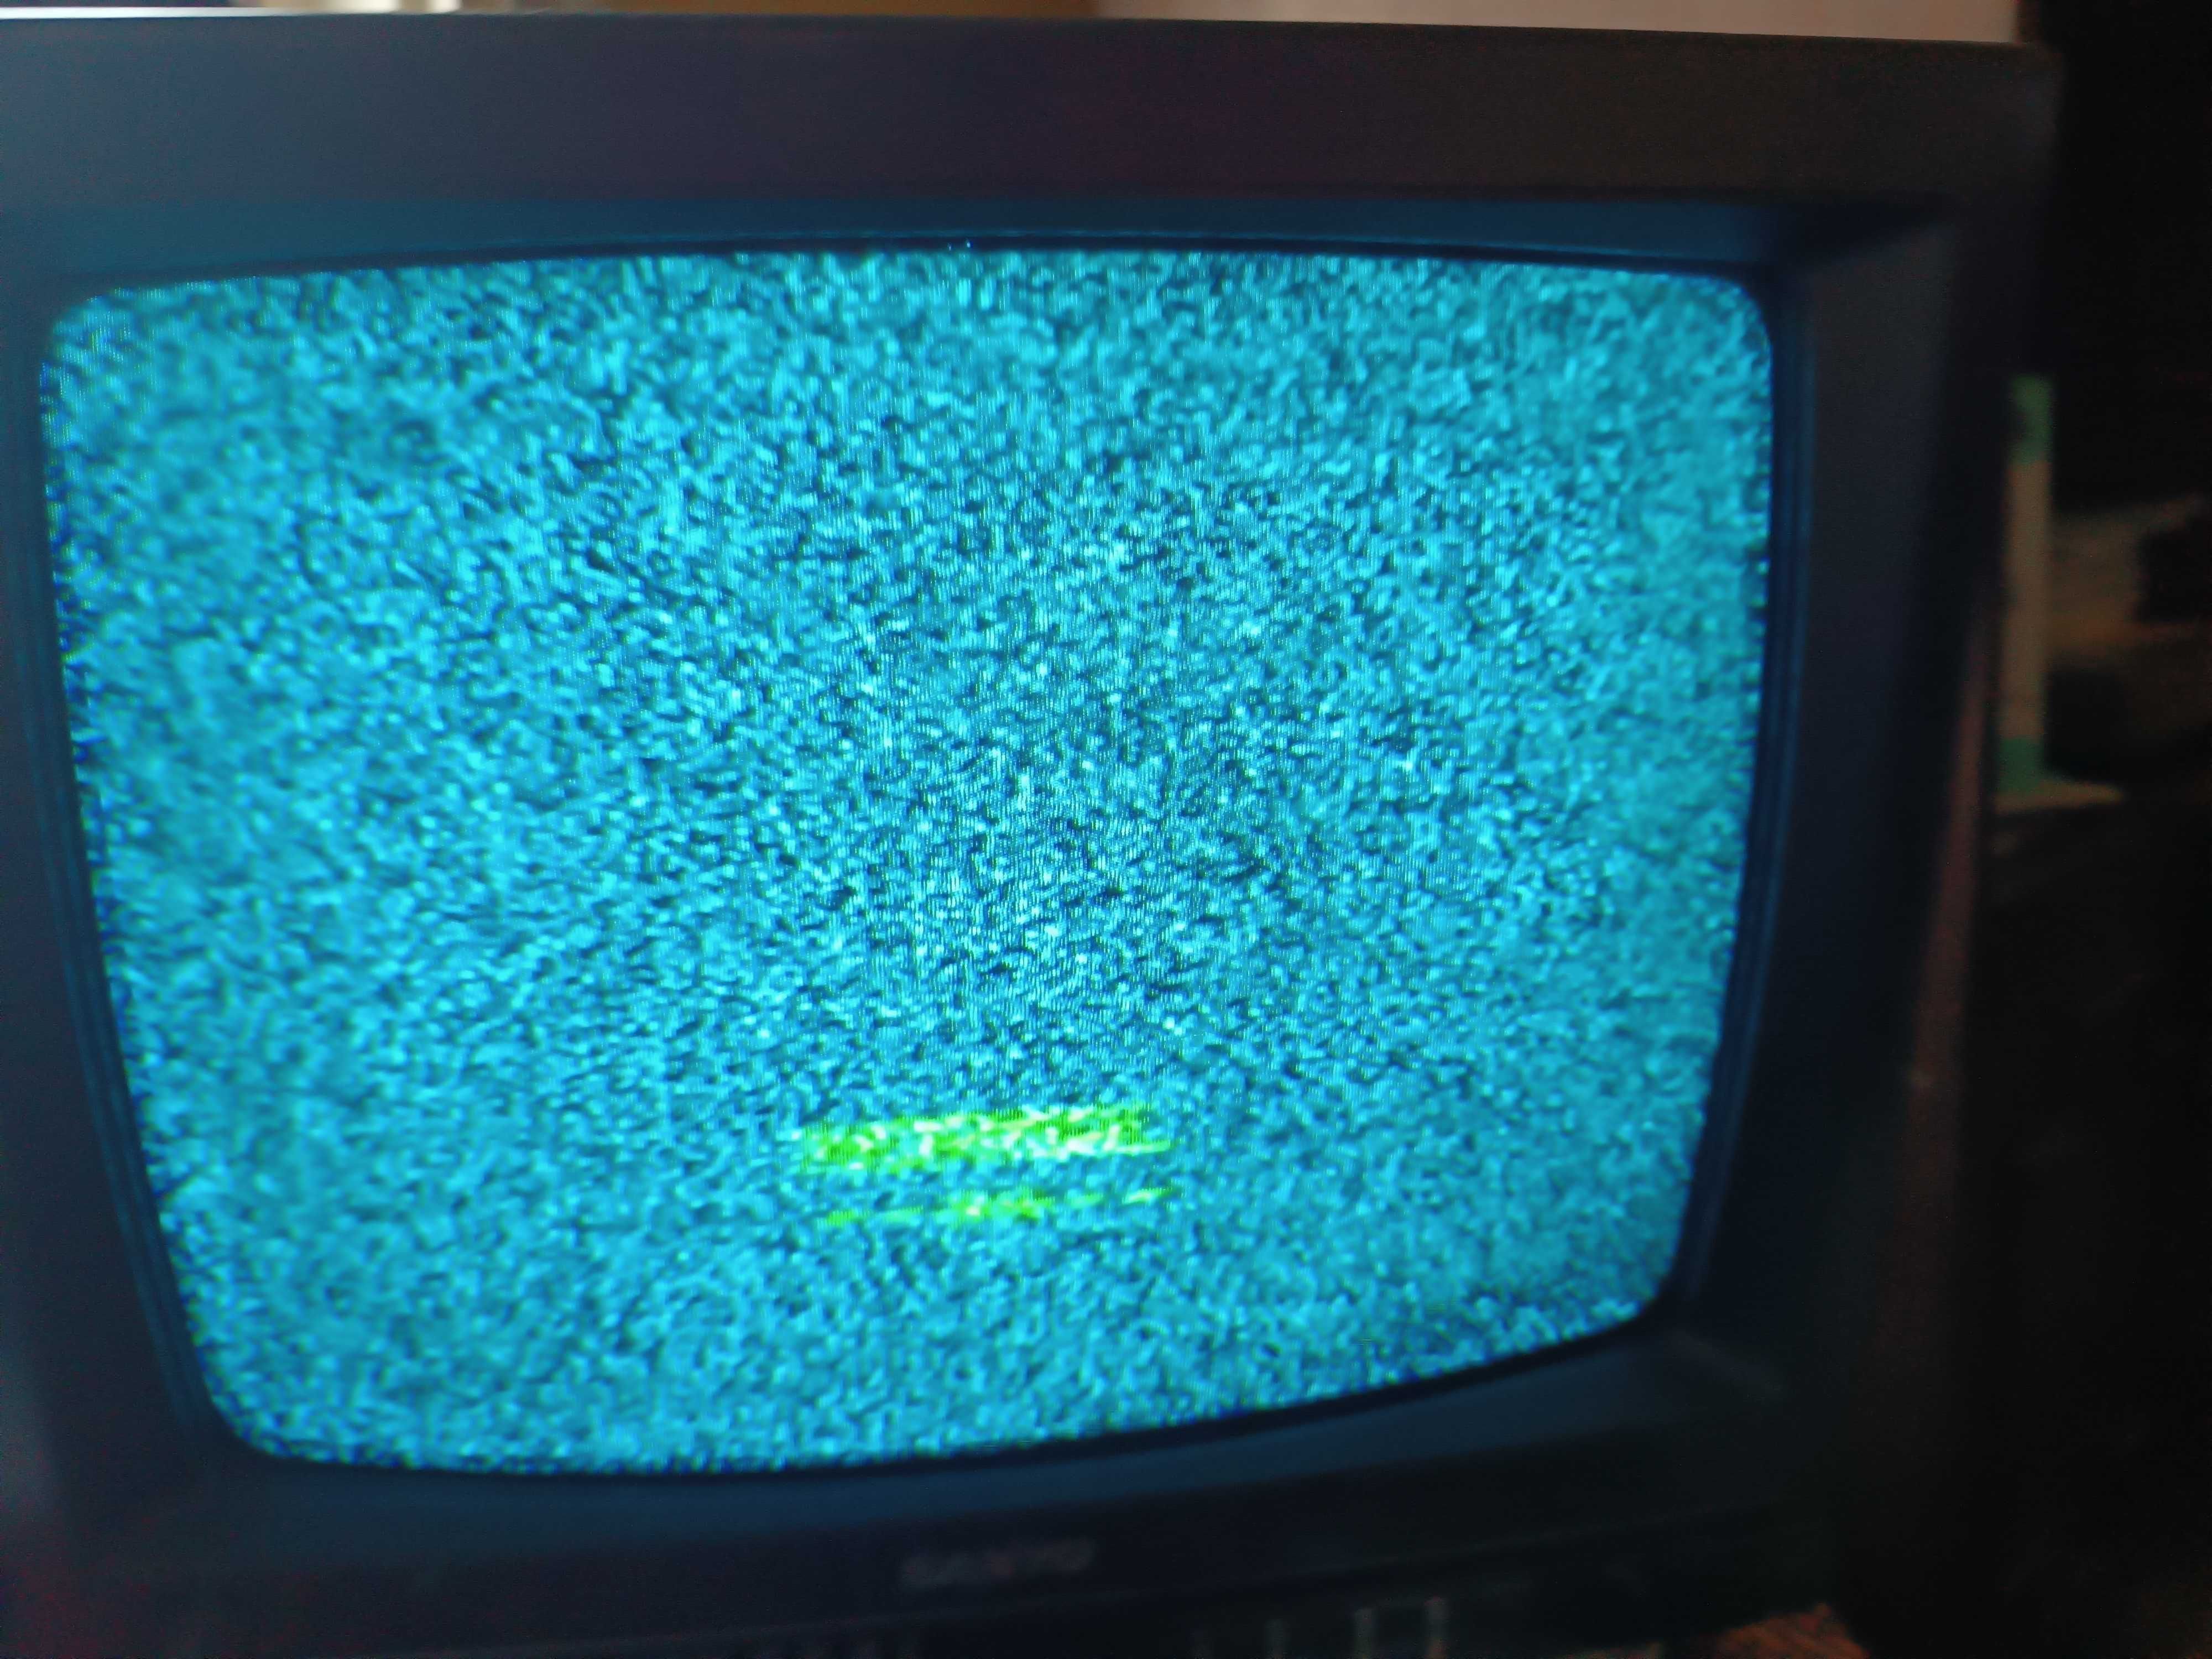 Televisão pequena a cores